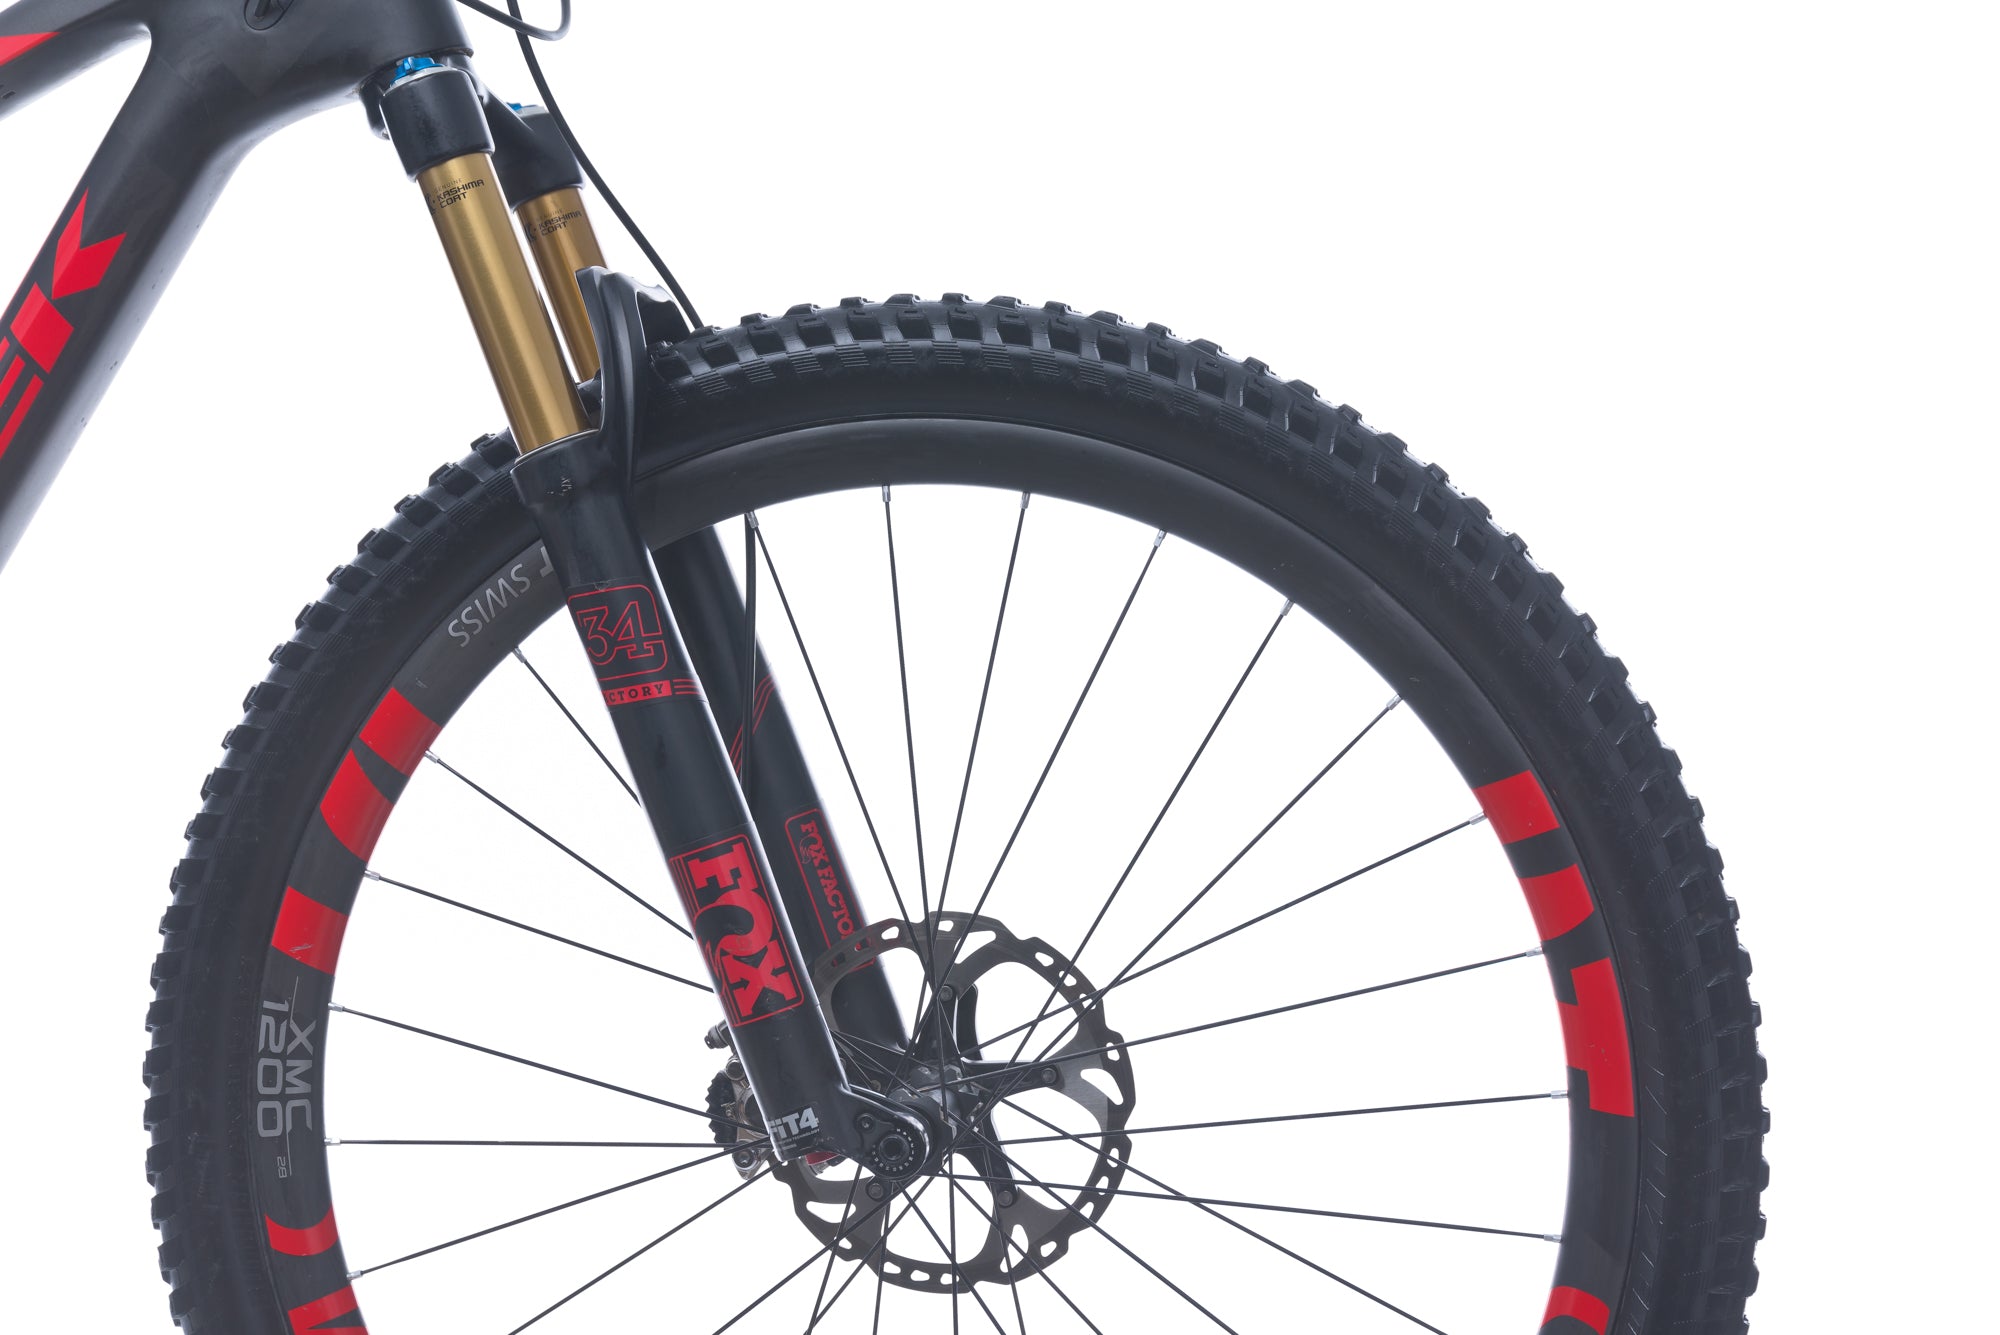 Trek Fuel EX 9.9 29 18.5in Bike - 2016 crank